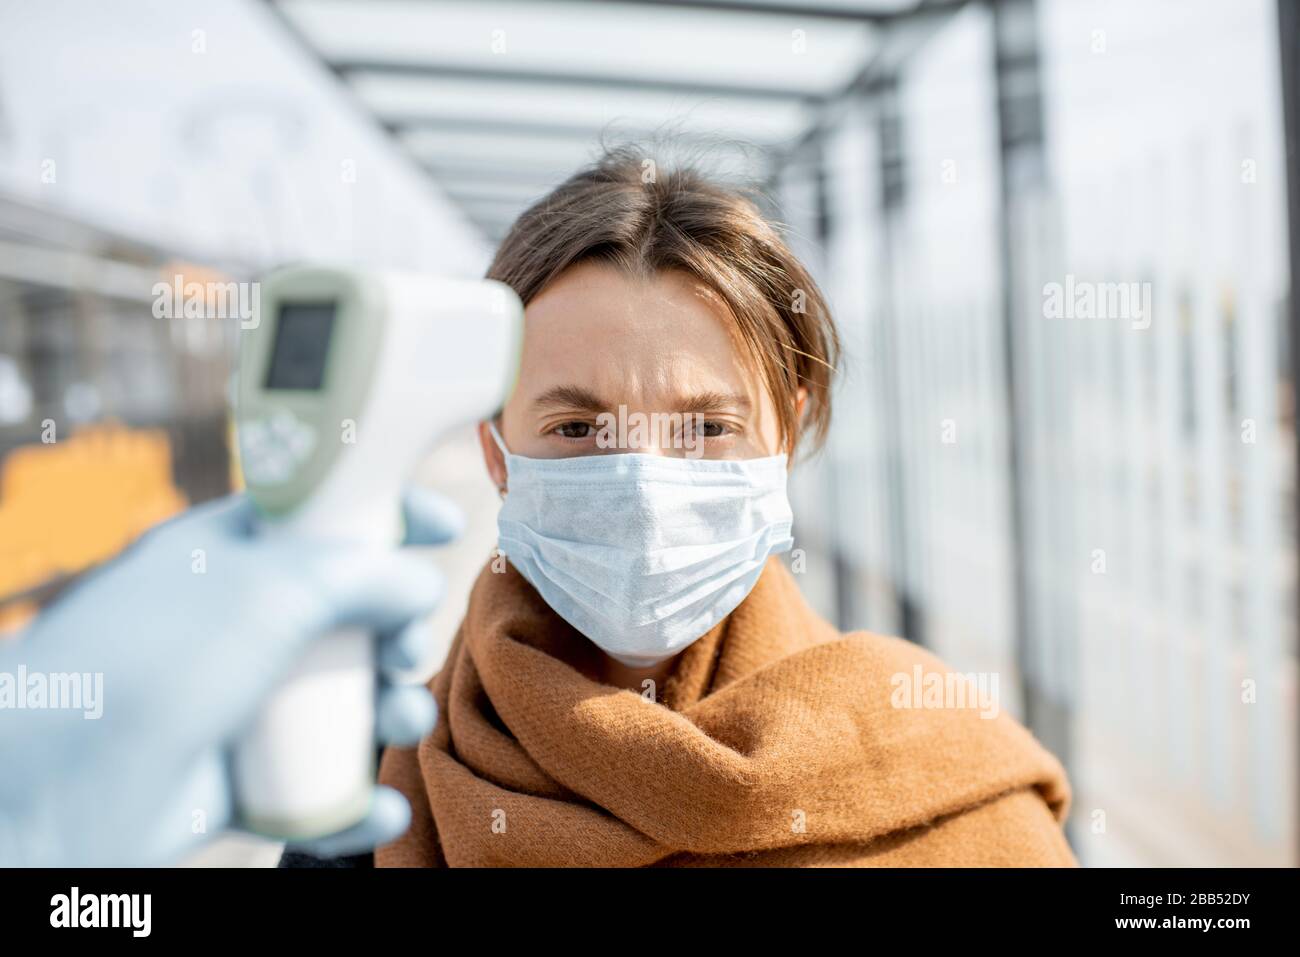 Medición de la temperatura con termómetro infrarrojo de una mujer joven en máscara facial en un punto de control durante una epidemia al aire libre. Concepto de prevención la propagación del virus Foto de stock